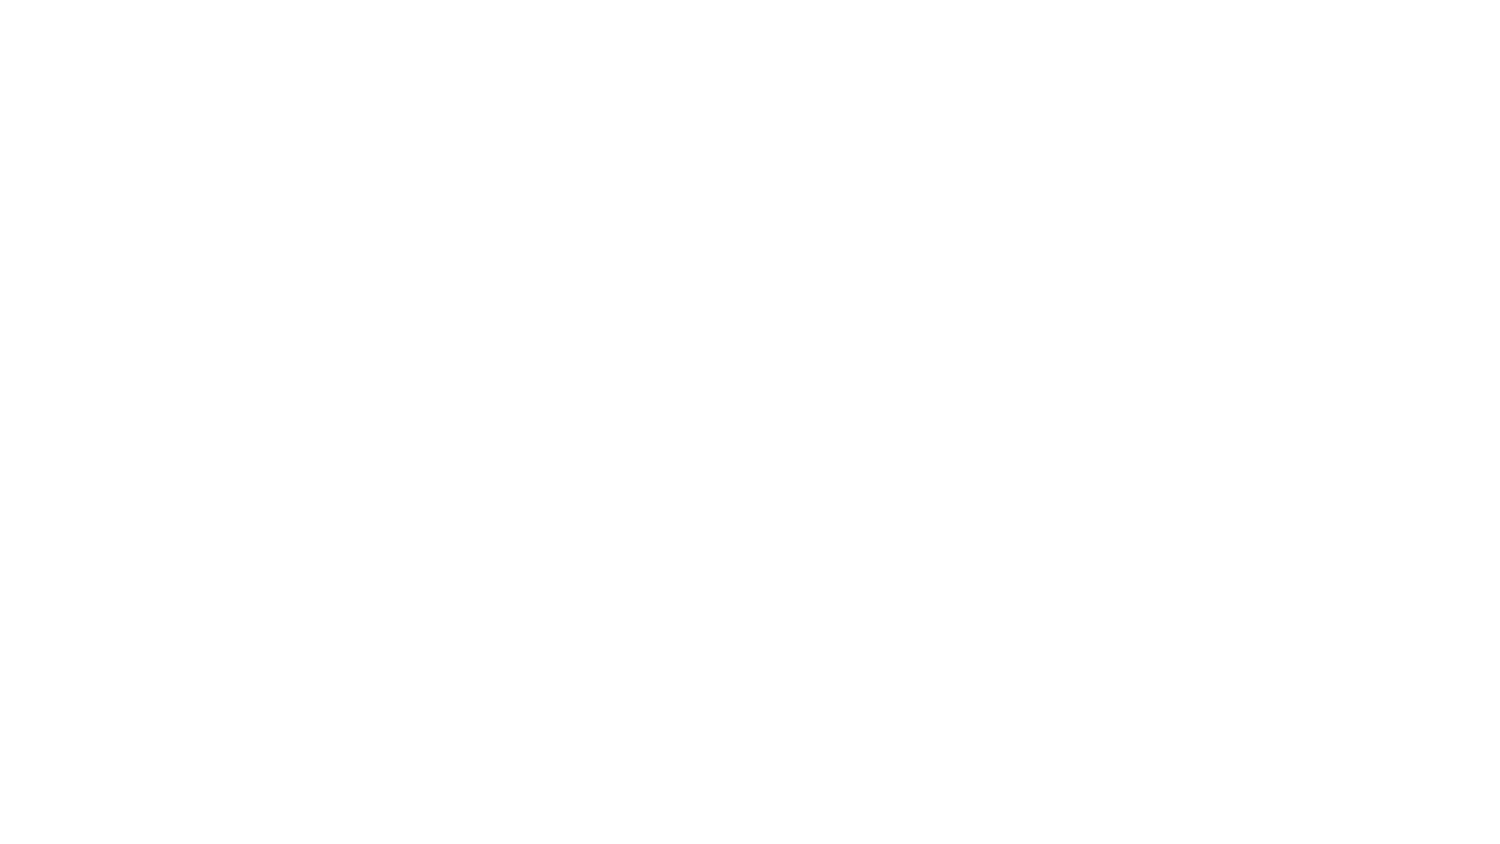 Keybite | Avain tuloksiin